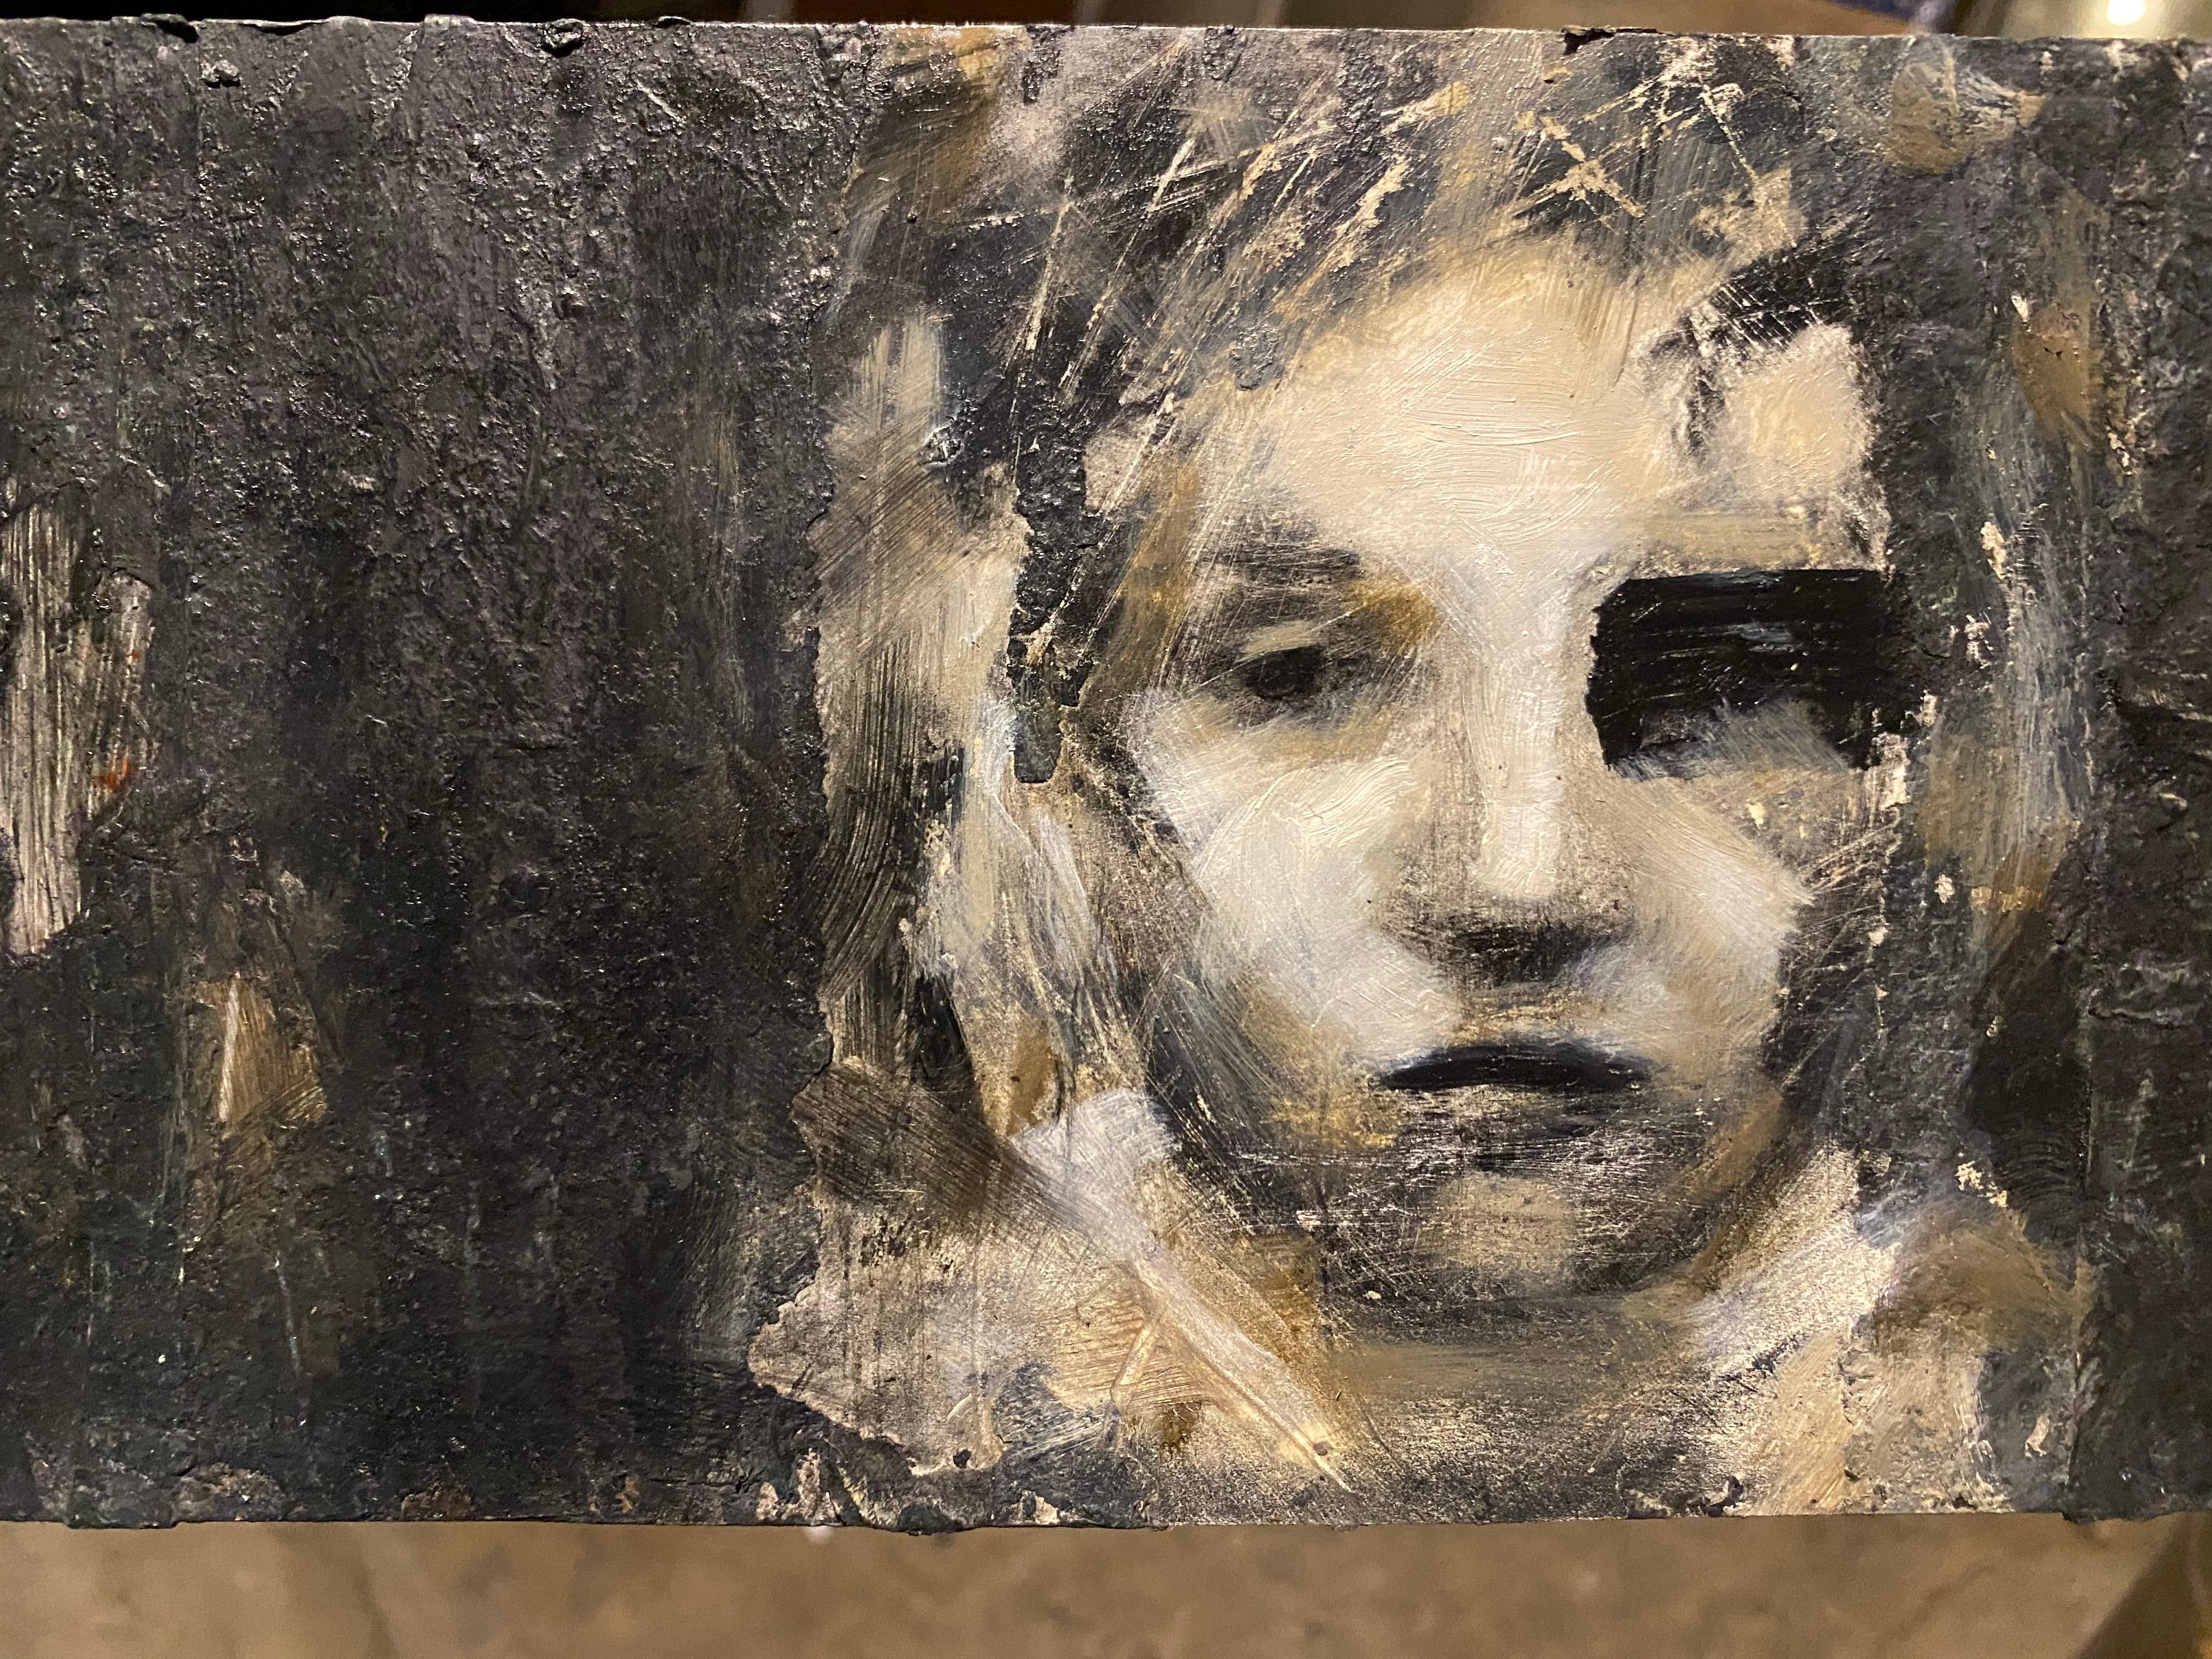 Huile texturée sur panneau « Chiaroscuro » représentant une femme, réalisme perturbé, monochromatique - Contemporain Mixed Media Art par Audrey Frank Anastasi